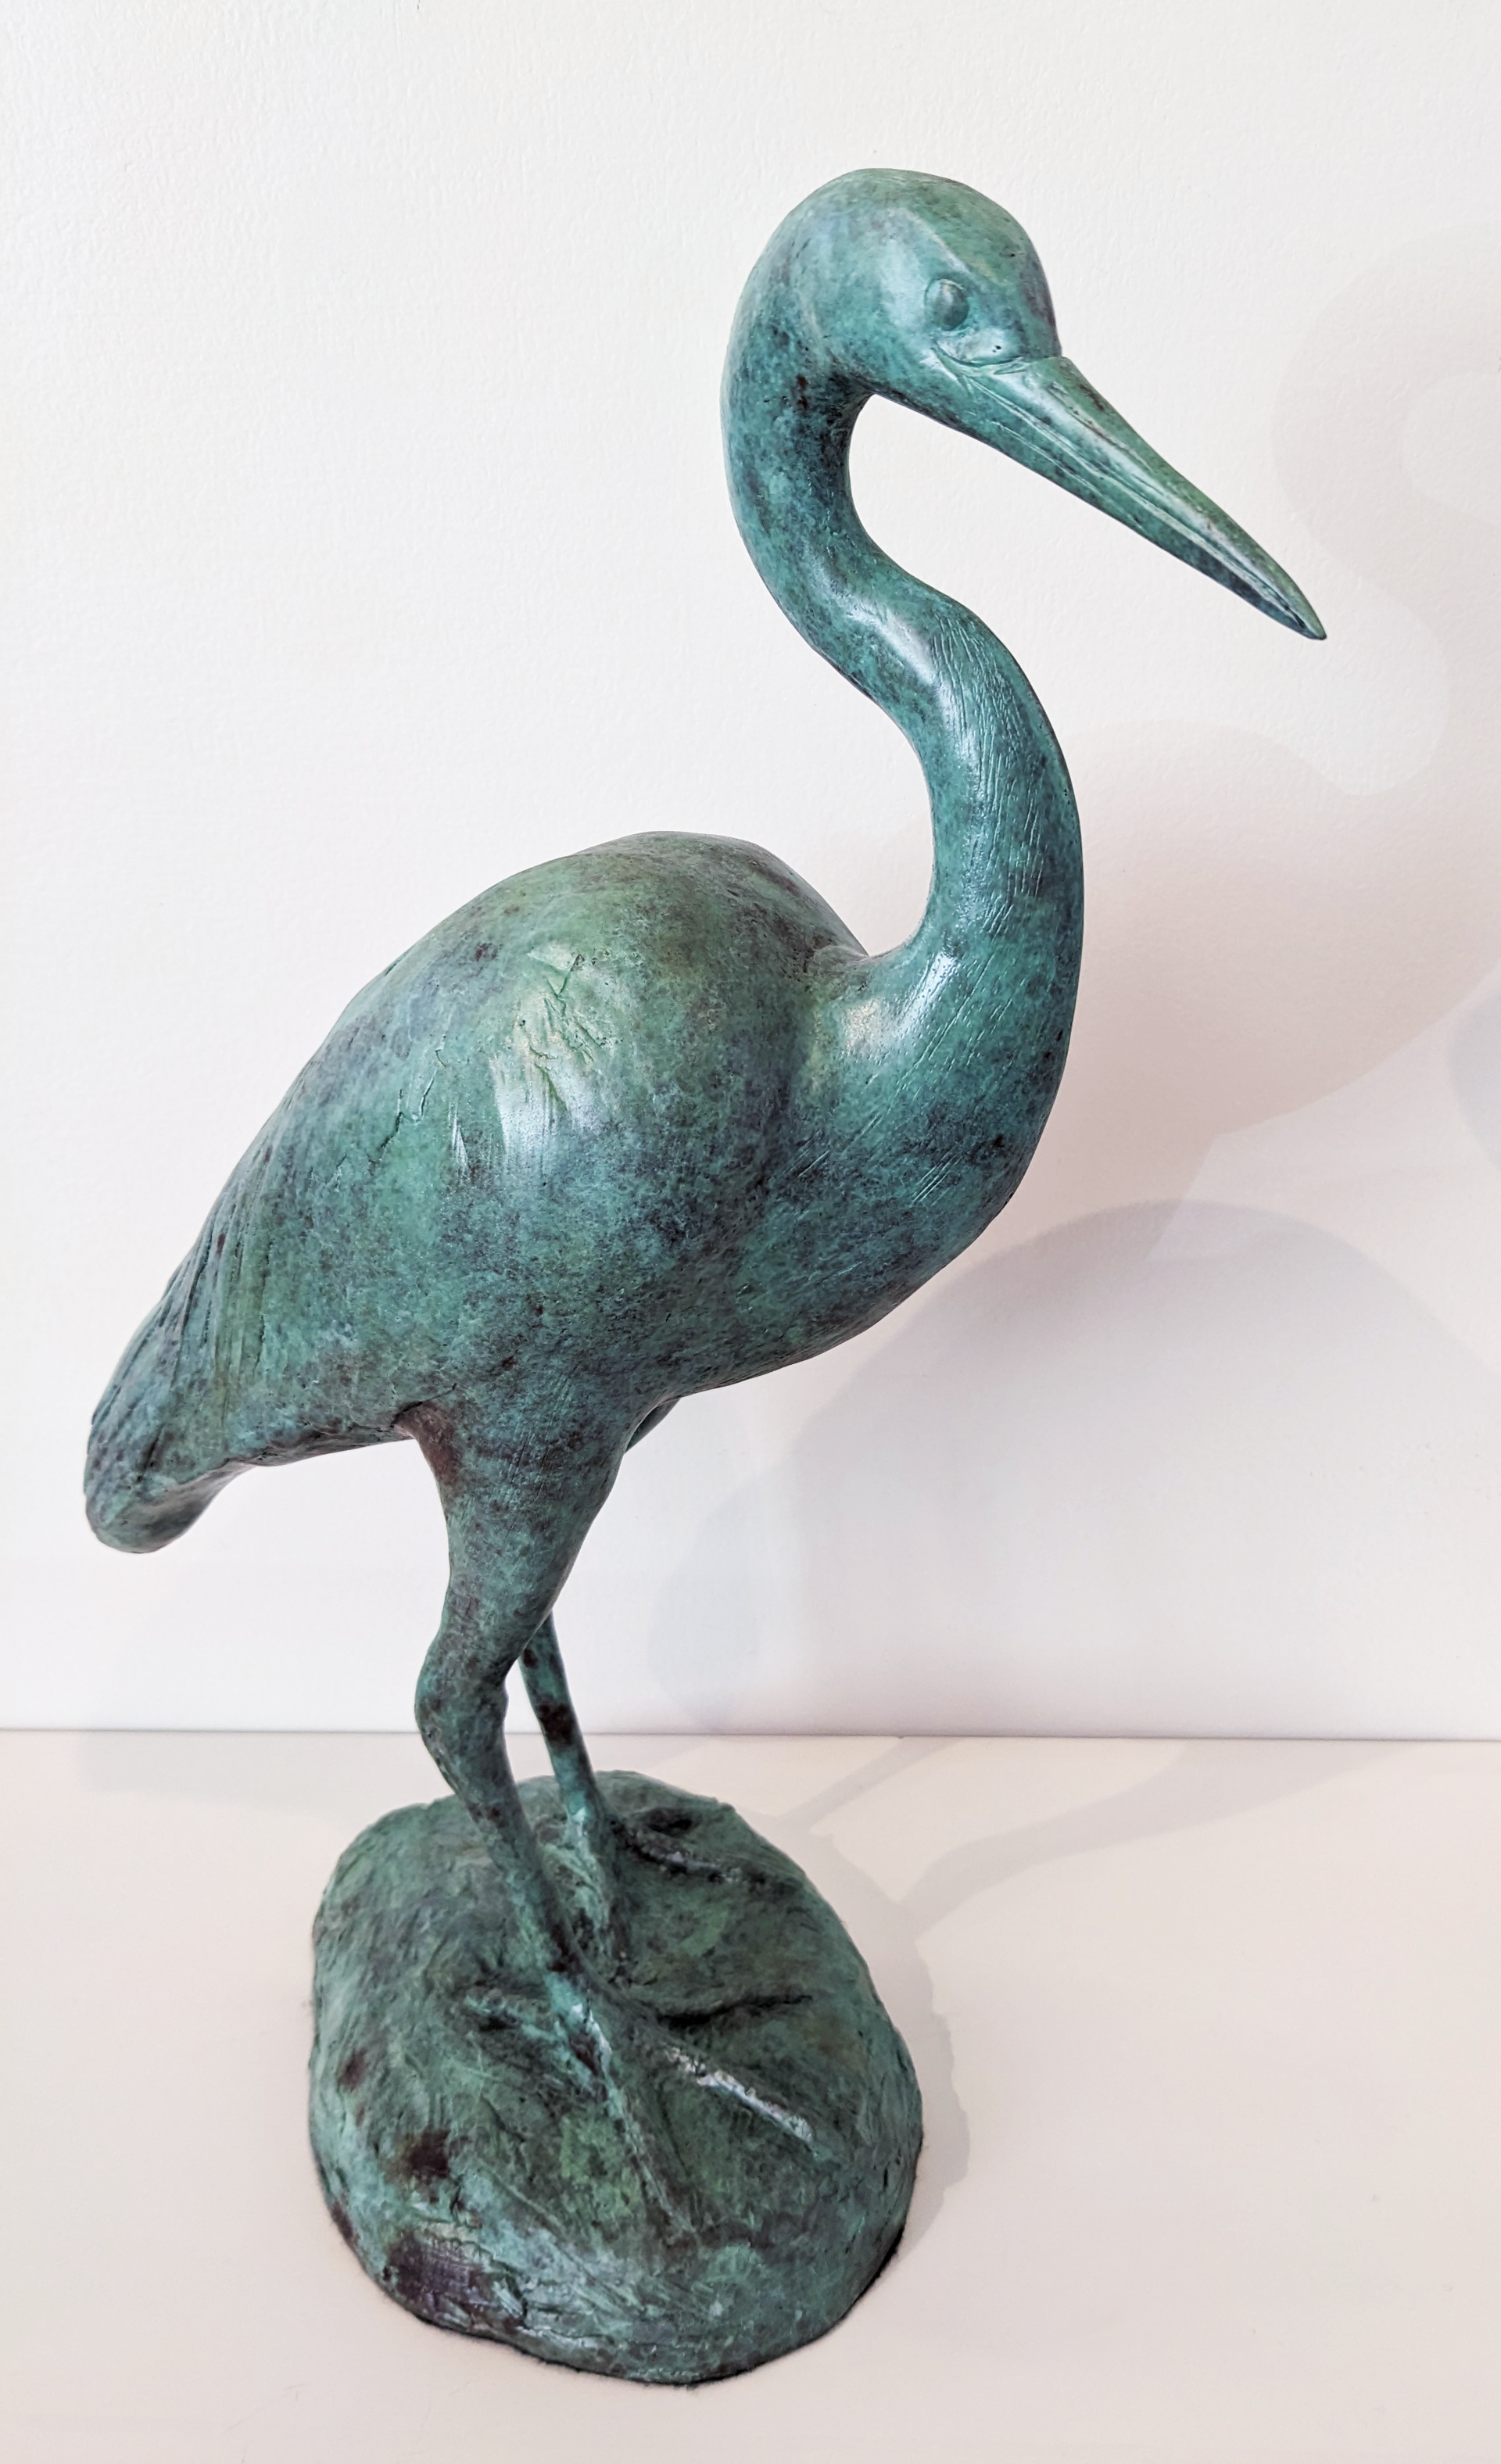 Heron (Greta) by Cathy Ferrell